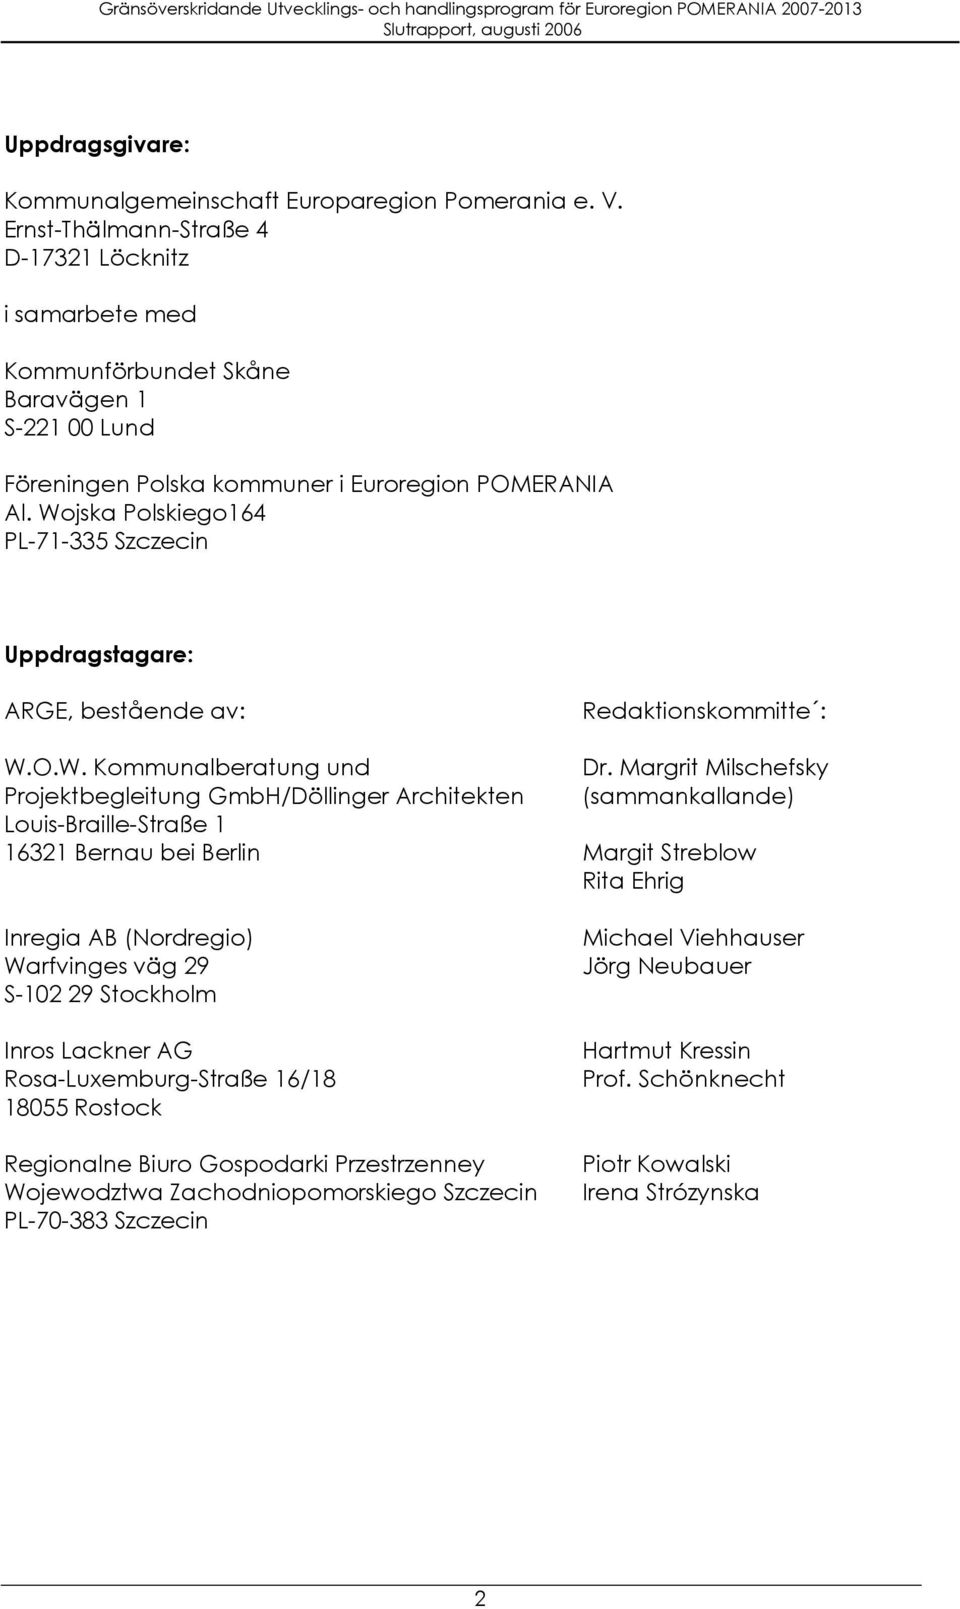 Wojska Polskiego164 PL-71-335 Szczecin Uppdragstagare: ARGE, bestående av: W.O.W. Kommunalberatung und Projektbegleitung GmbH/Döllinger Architekten Louis-Braille-Straße 1 16321 Bernau bei Berlin